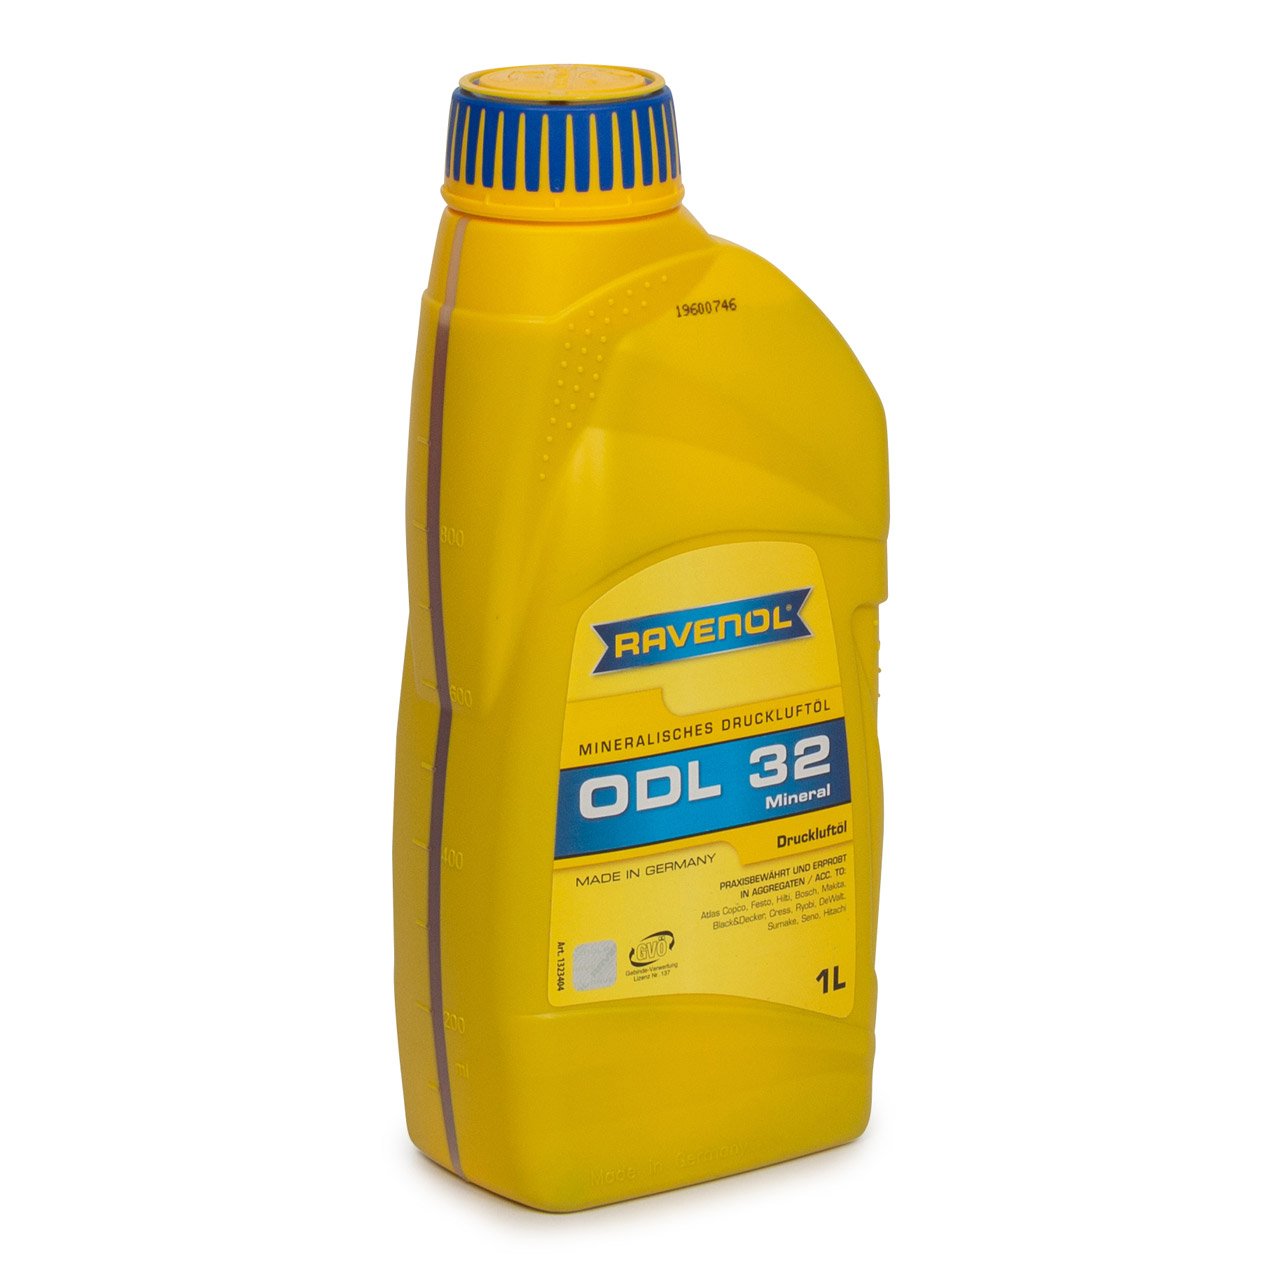 RAVENOL ODL 32 Druckluft Spezialöl Öl Druckluft für Druckluftaggregate 1 Liter